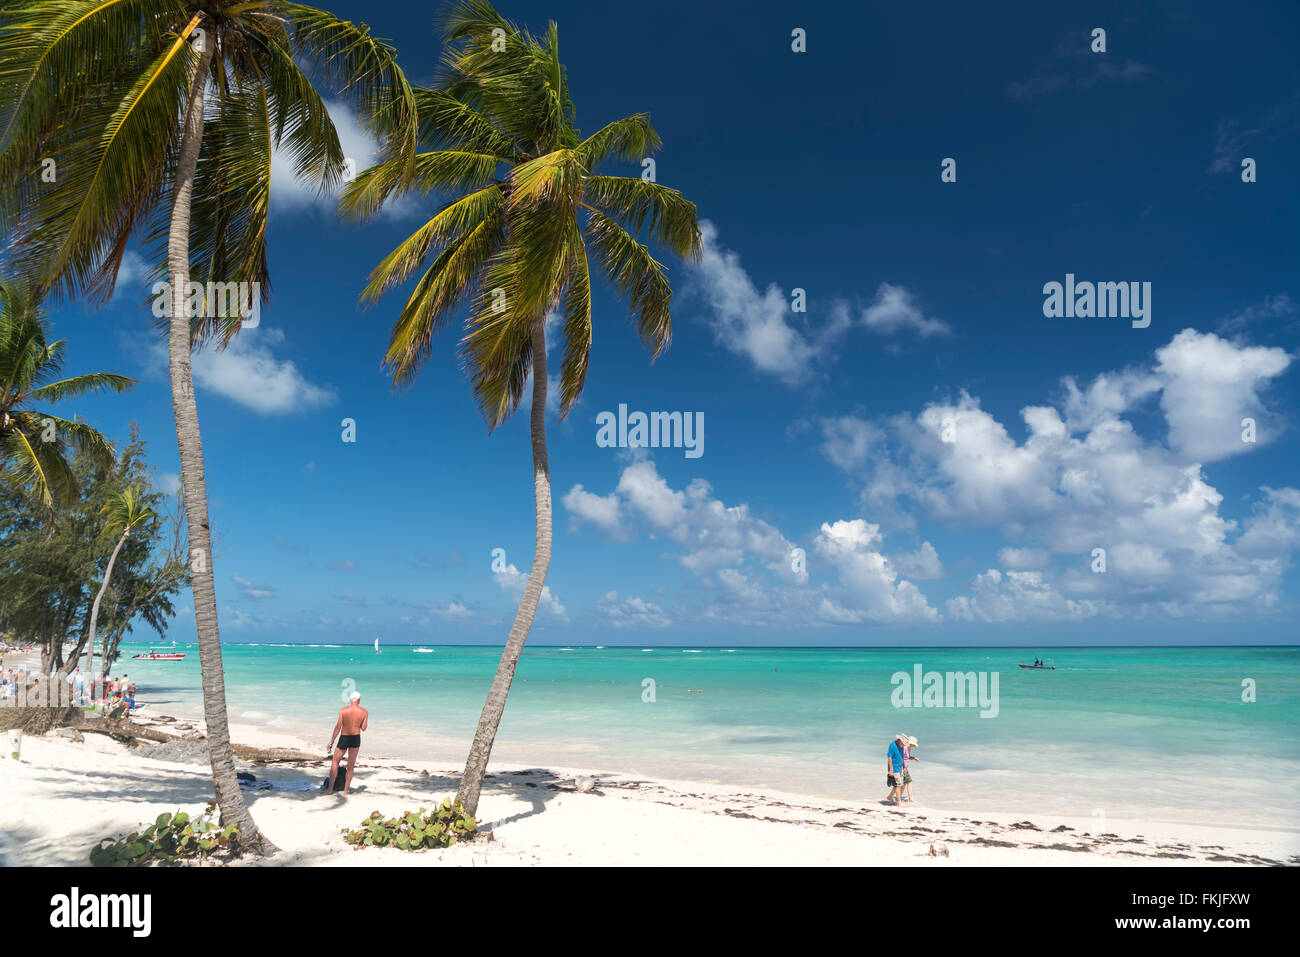 Palmeras de playa arenosa de Playa Bávaro, Punta Cana, República Dominicana, El Caribe, América, Foto de stock